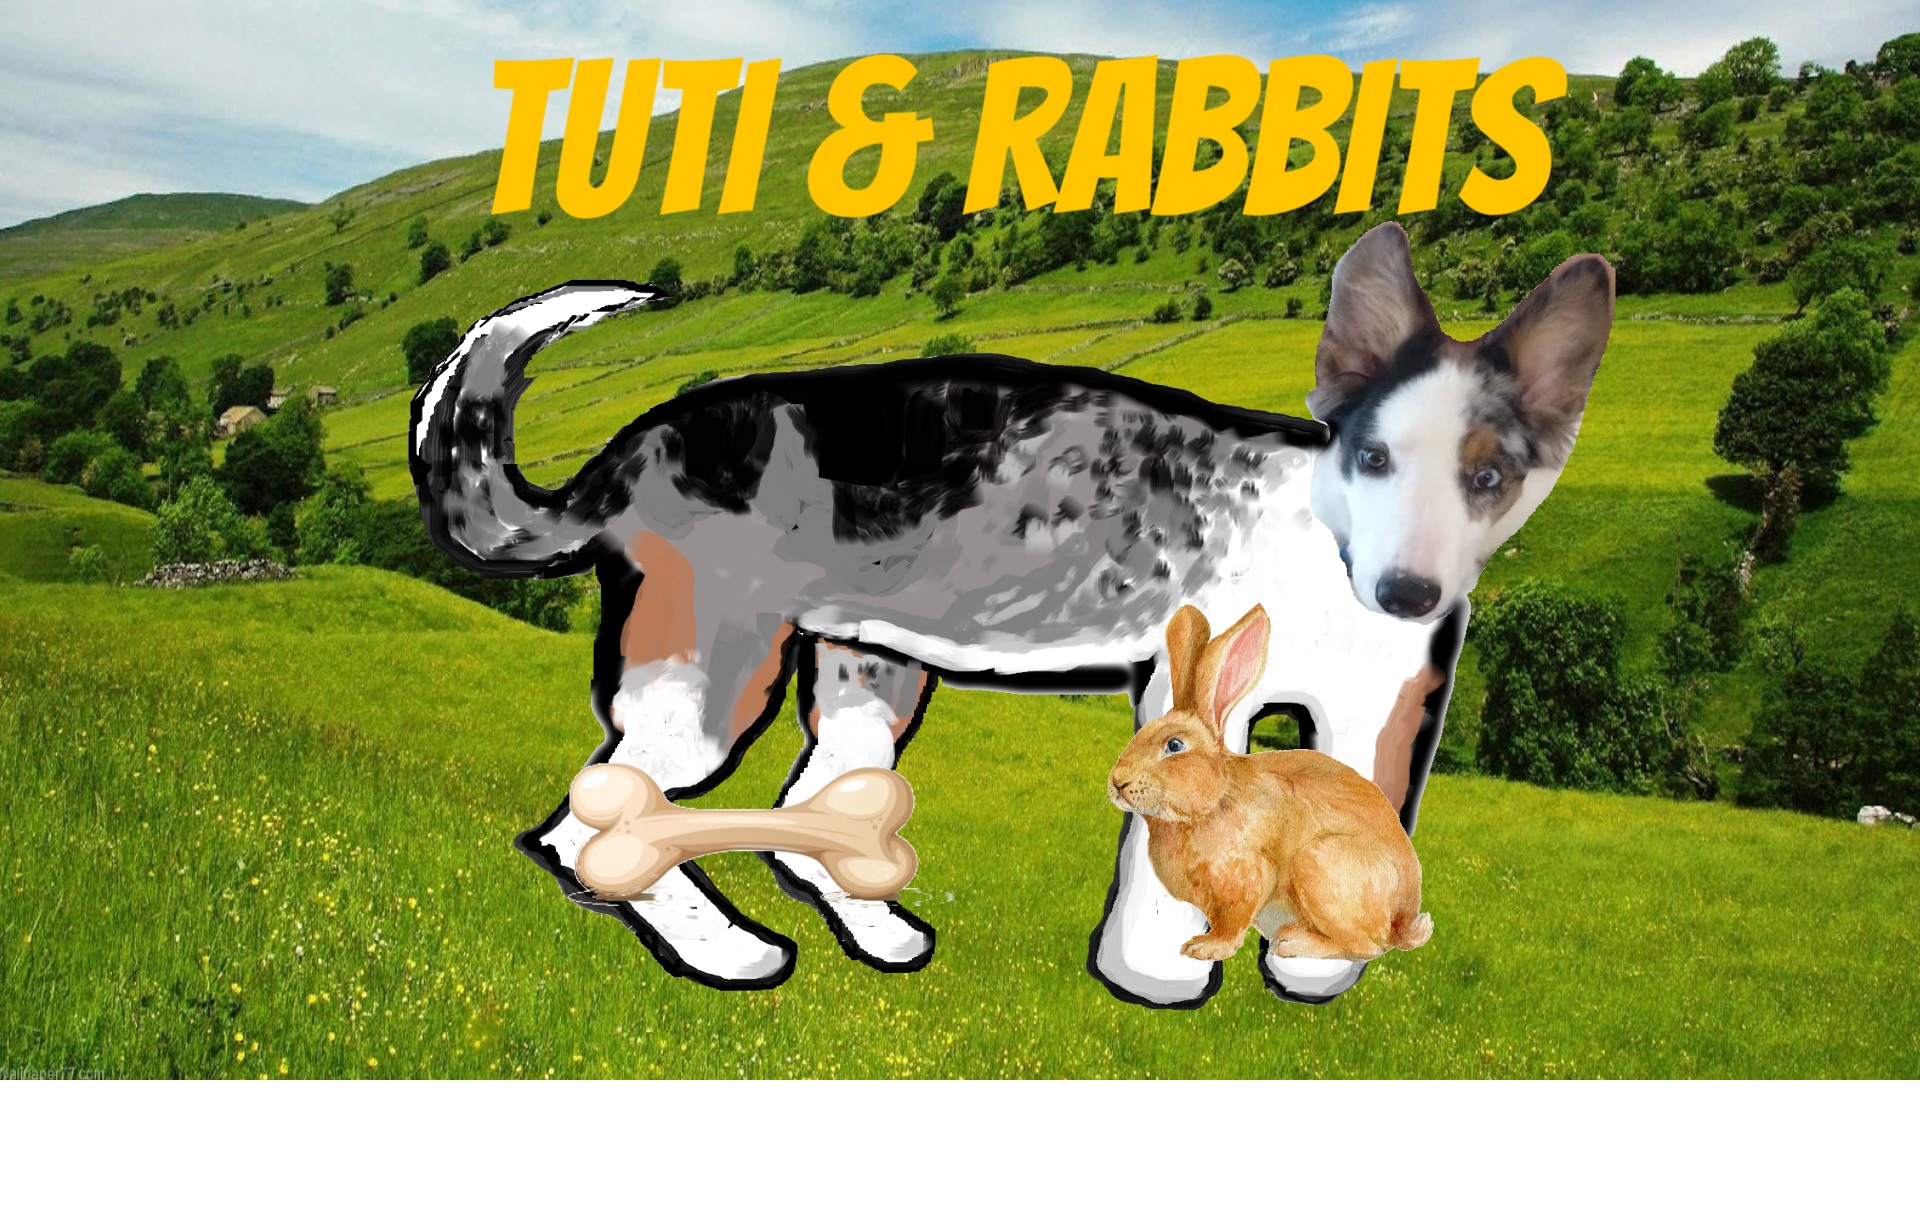 Tutti and Rabbits